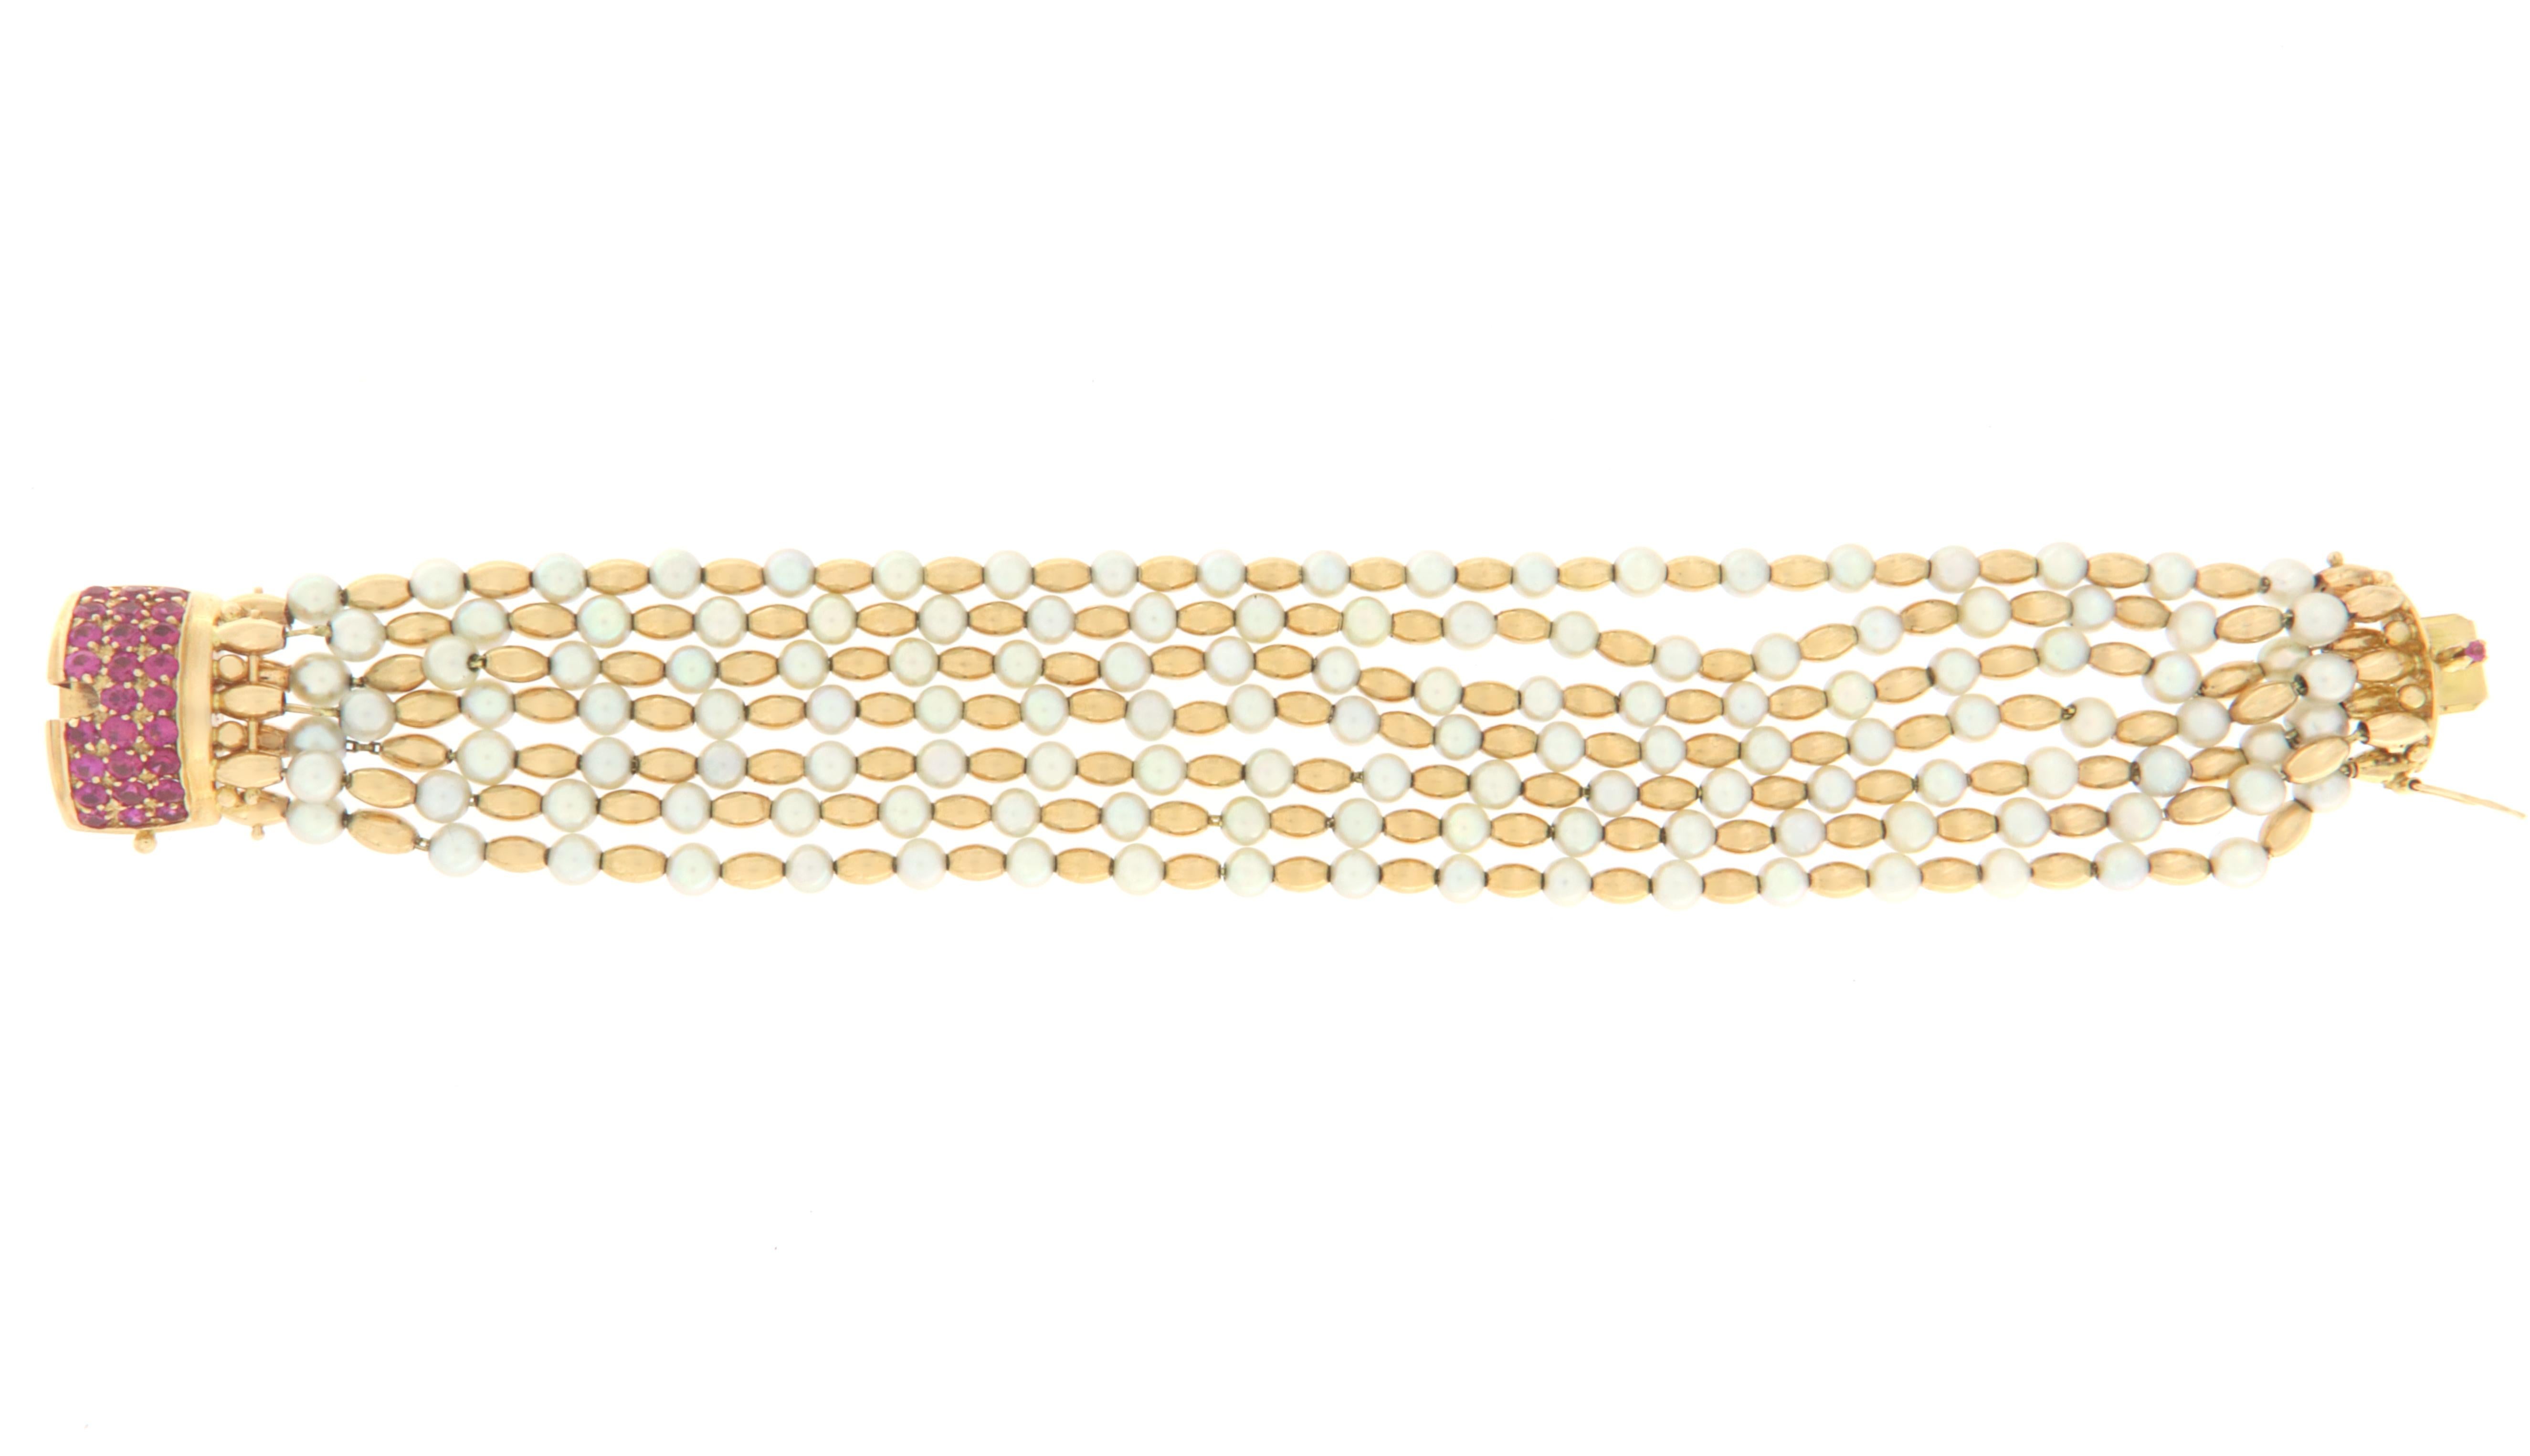 Brilliant Cut Pearls Rubies 18 Karat Yellow Gold Cuff Bracelet